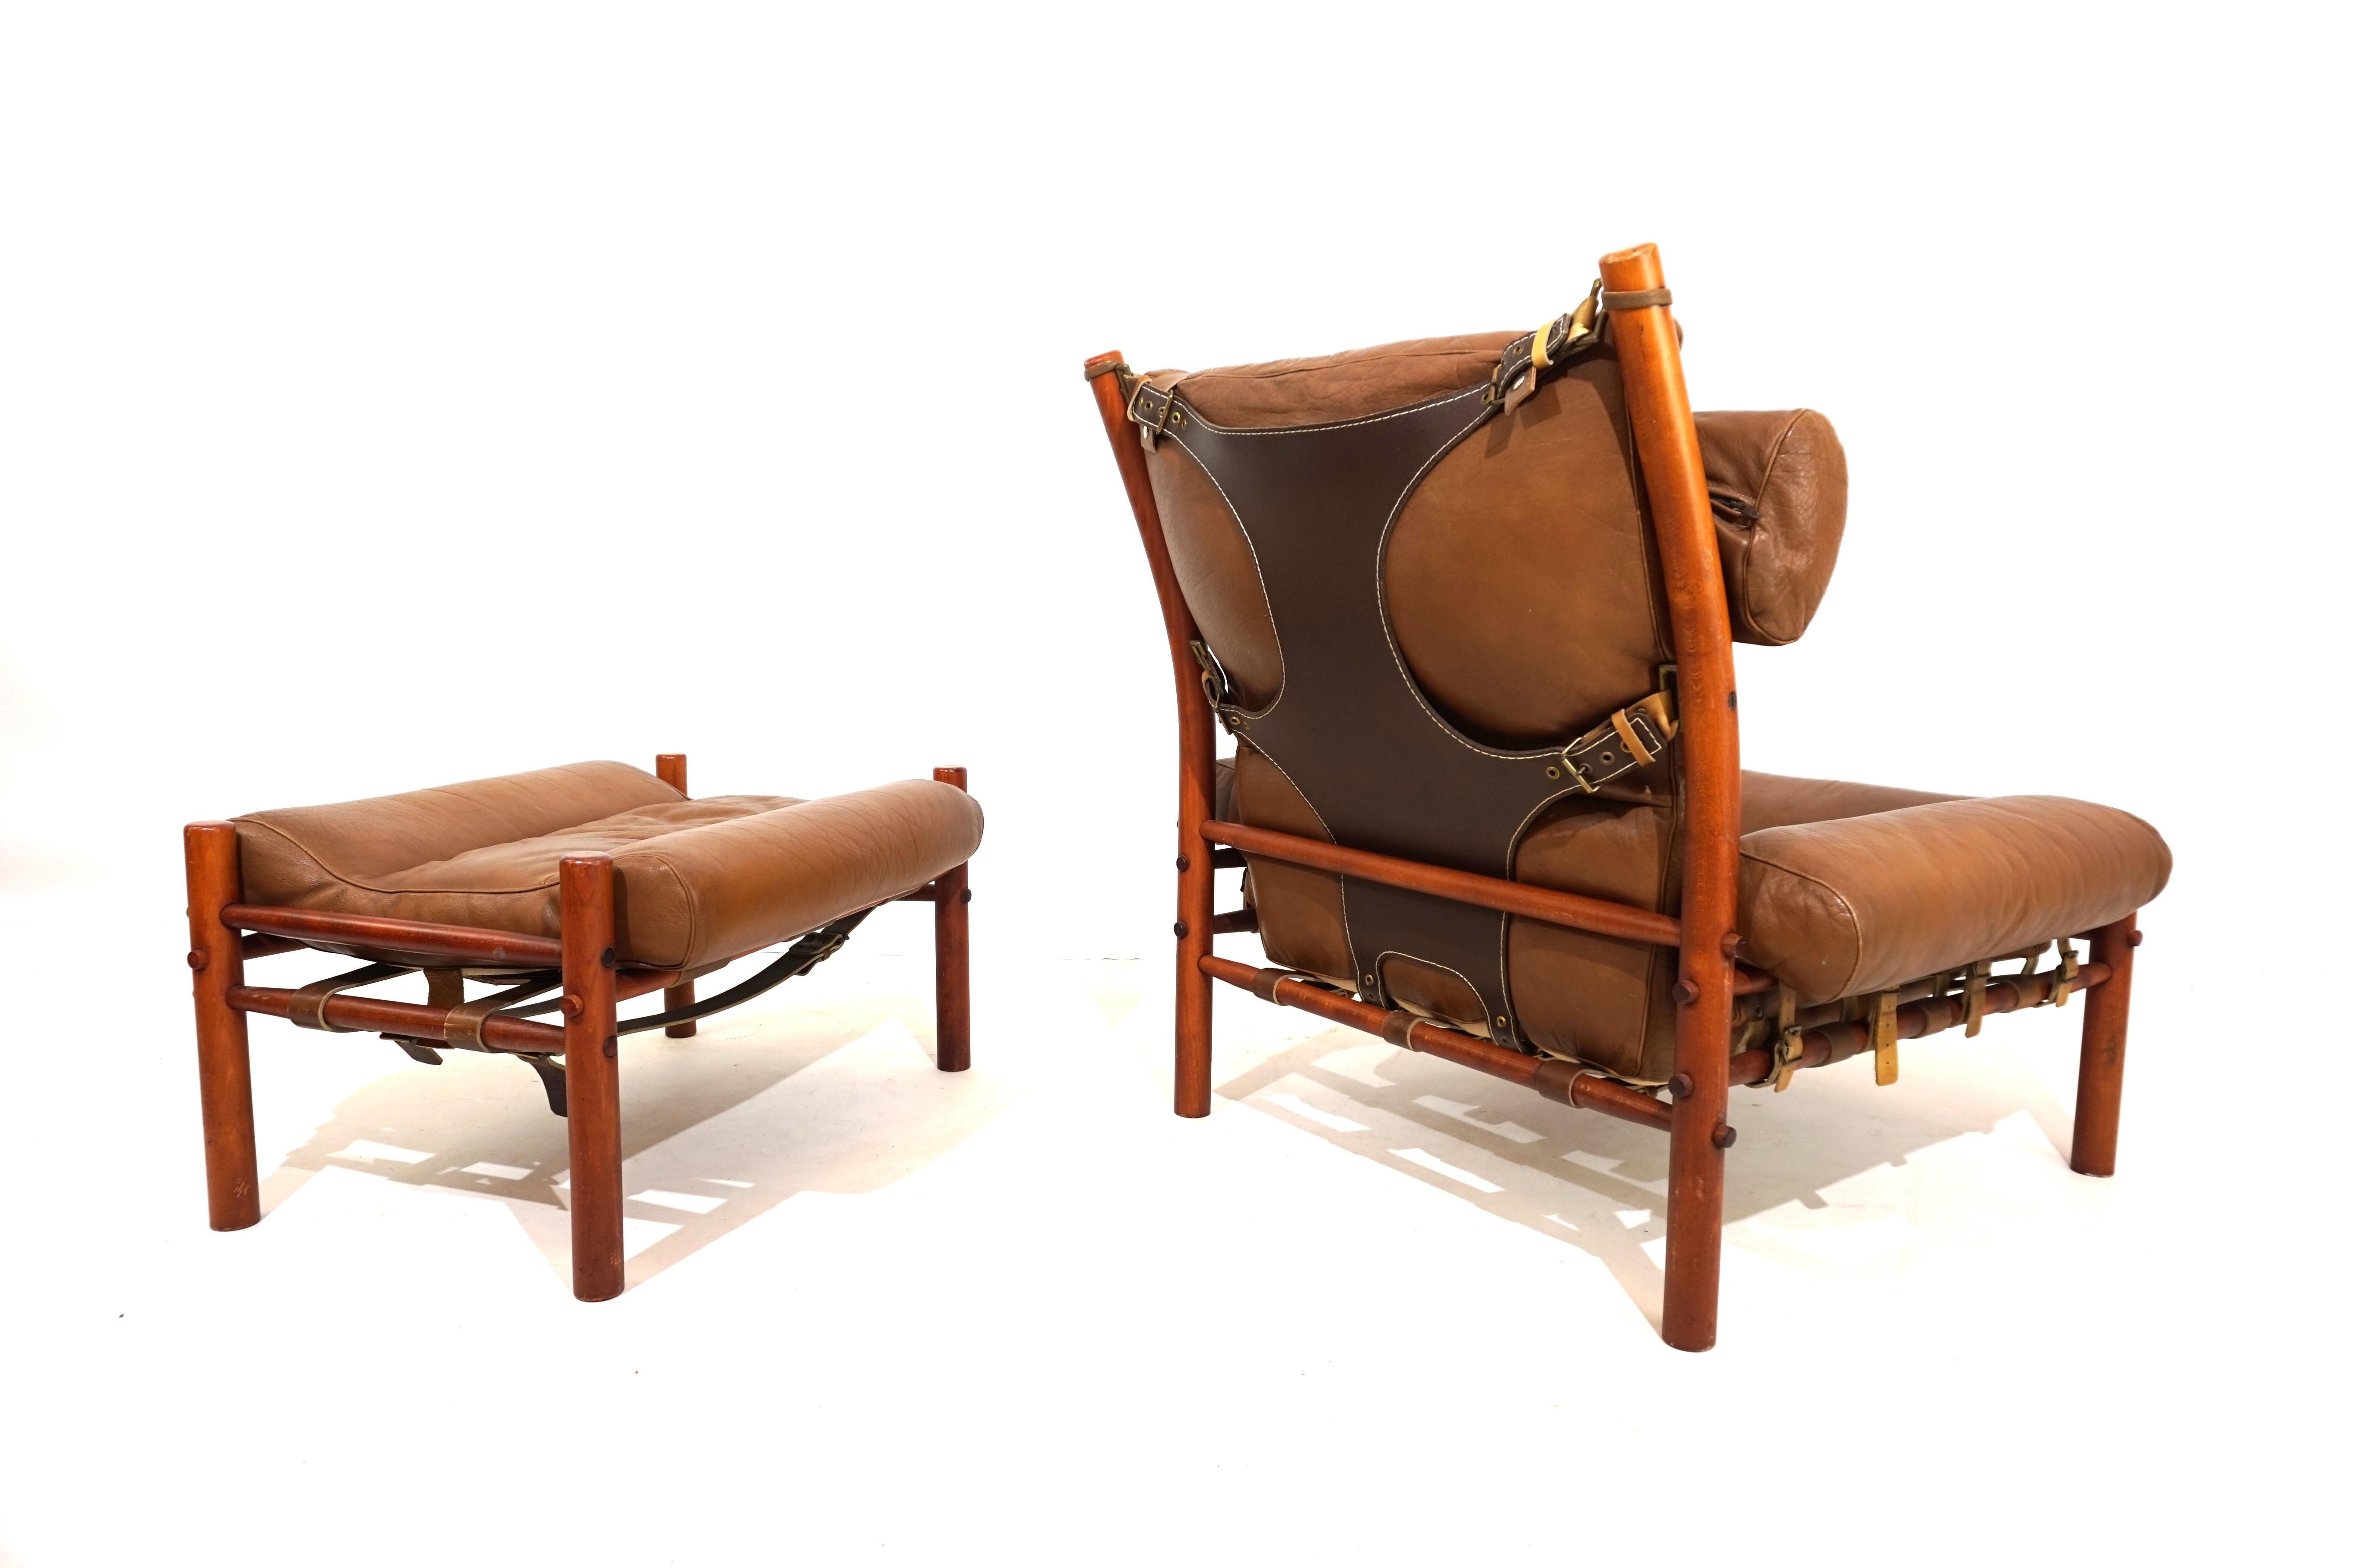 Dieser Inka-Sessel mit Ottomane aus karamellfarbenem Anilinleder mit dunkelbraunem, kräftigem Leder an der Rückenlehne ist in ausgezeichnetem Zustand. Das Originalleder des Sessels und der Ottomane ist einwandfrei, alle Verschlüsse und Lederriemen